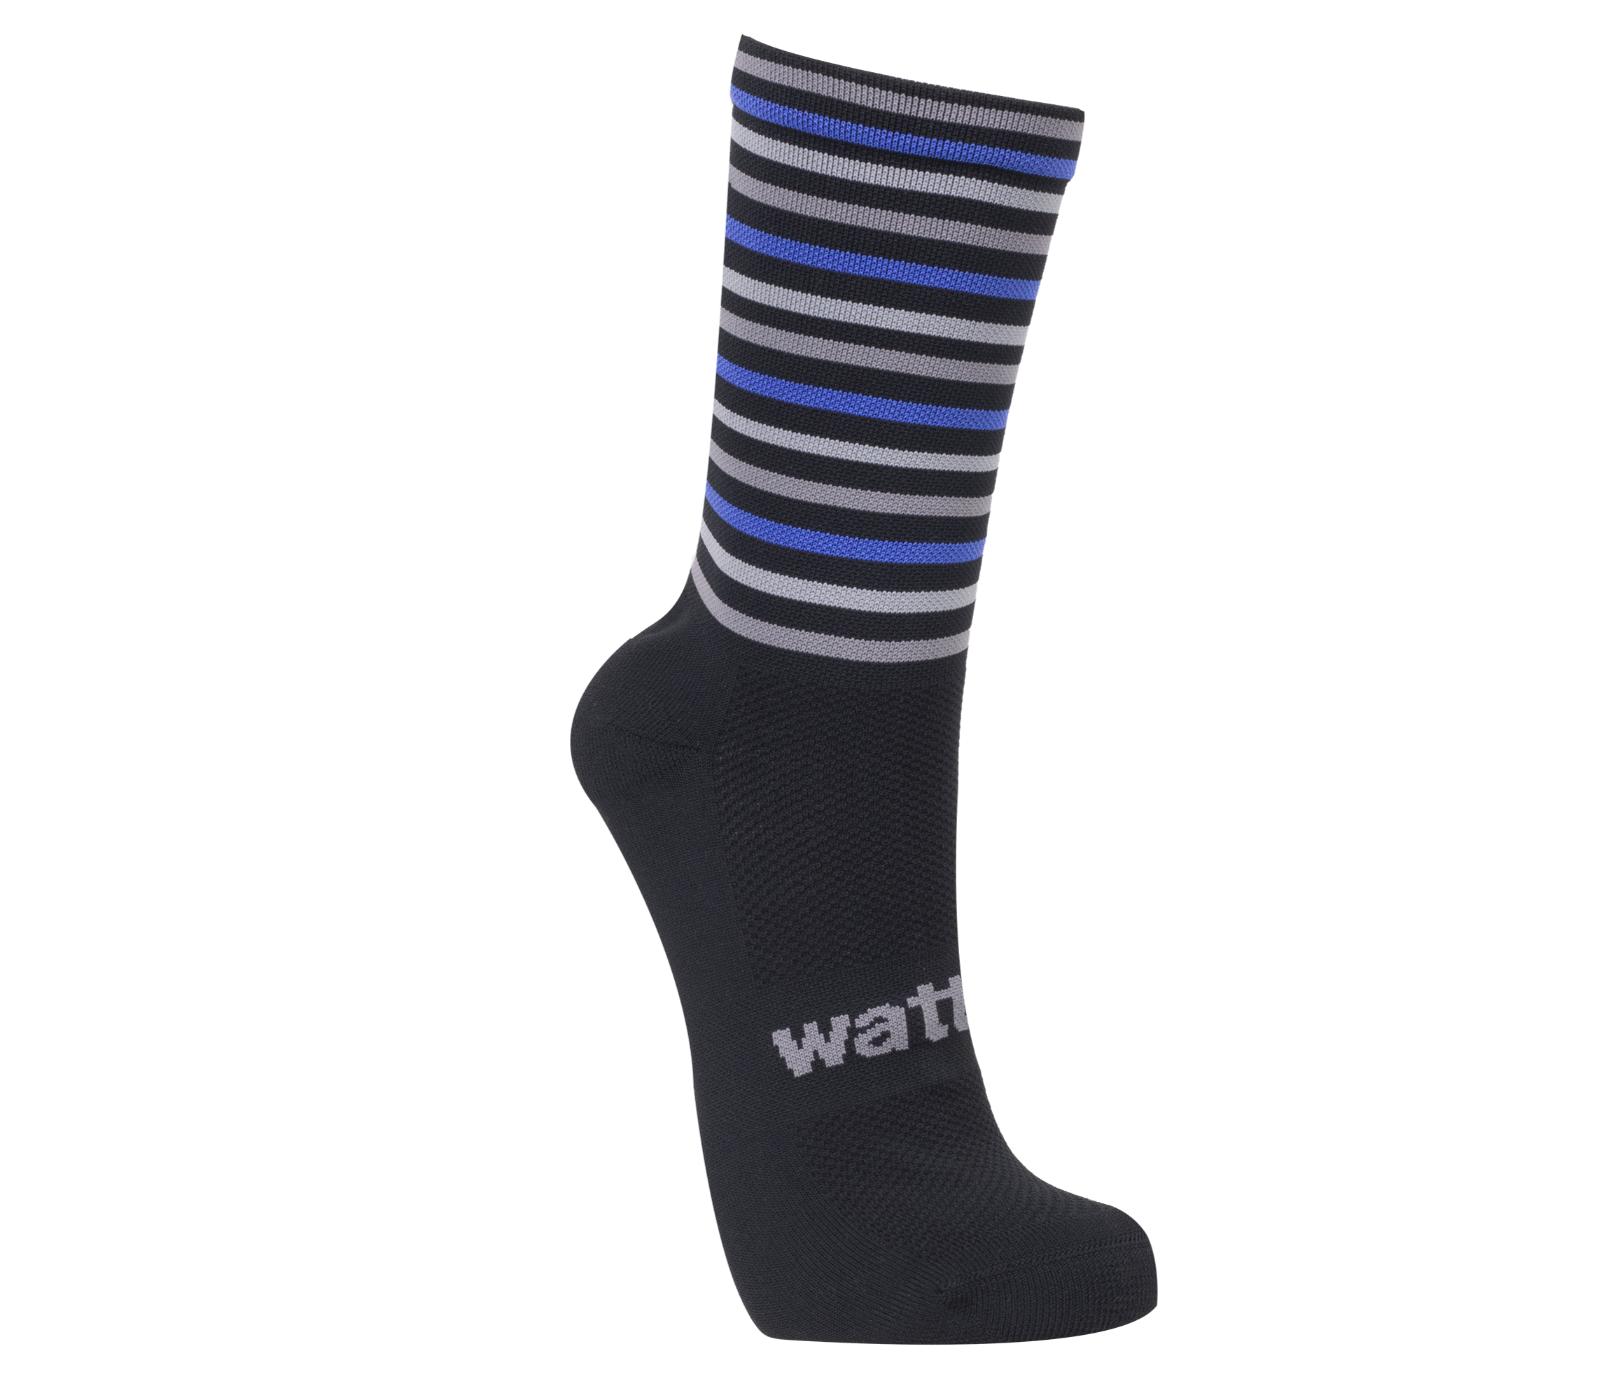 Wattz Knit Blue/Grey Men's Socks